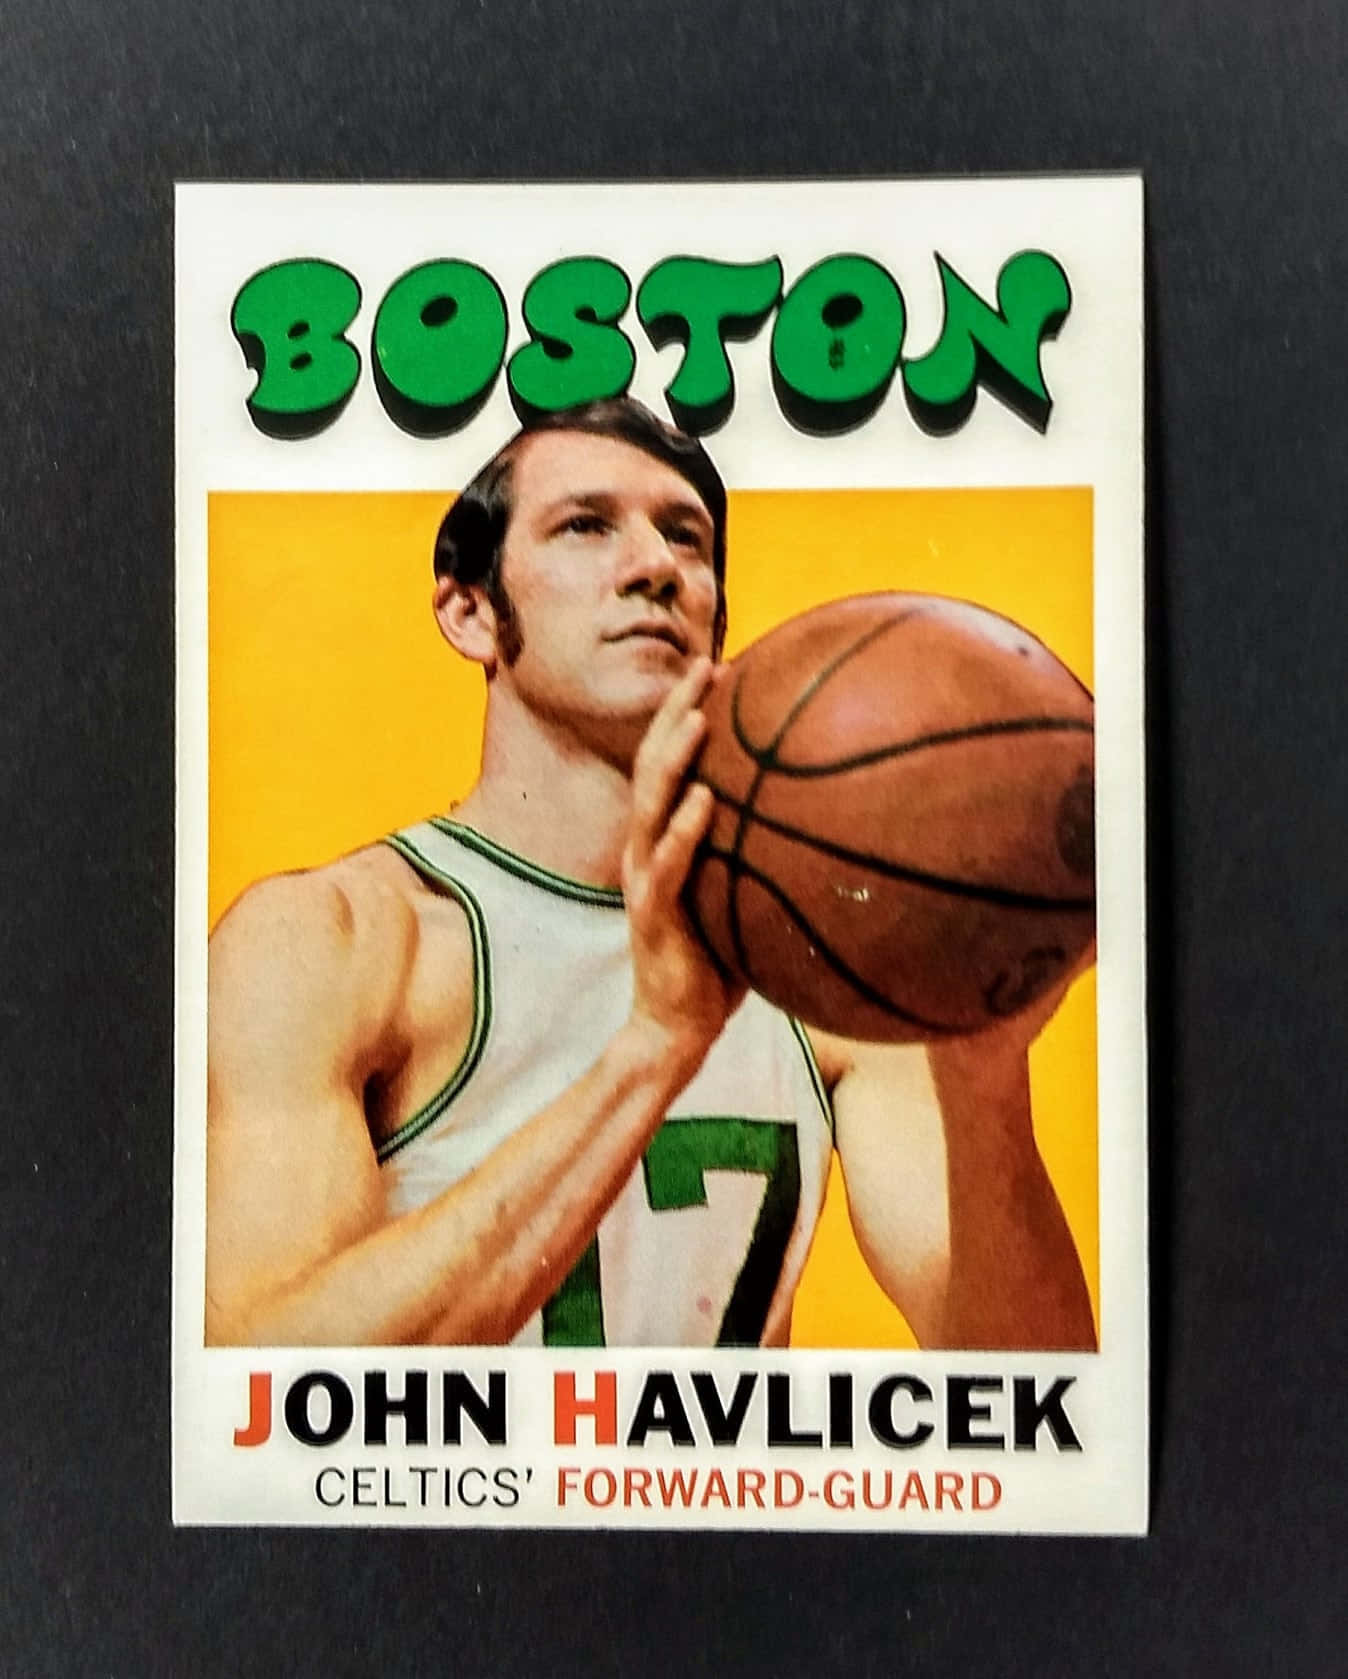 Vintage Poster John Havlicek Basketball Wallpaper